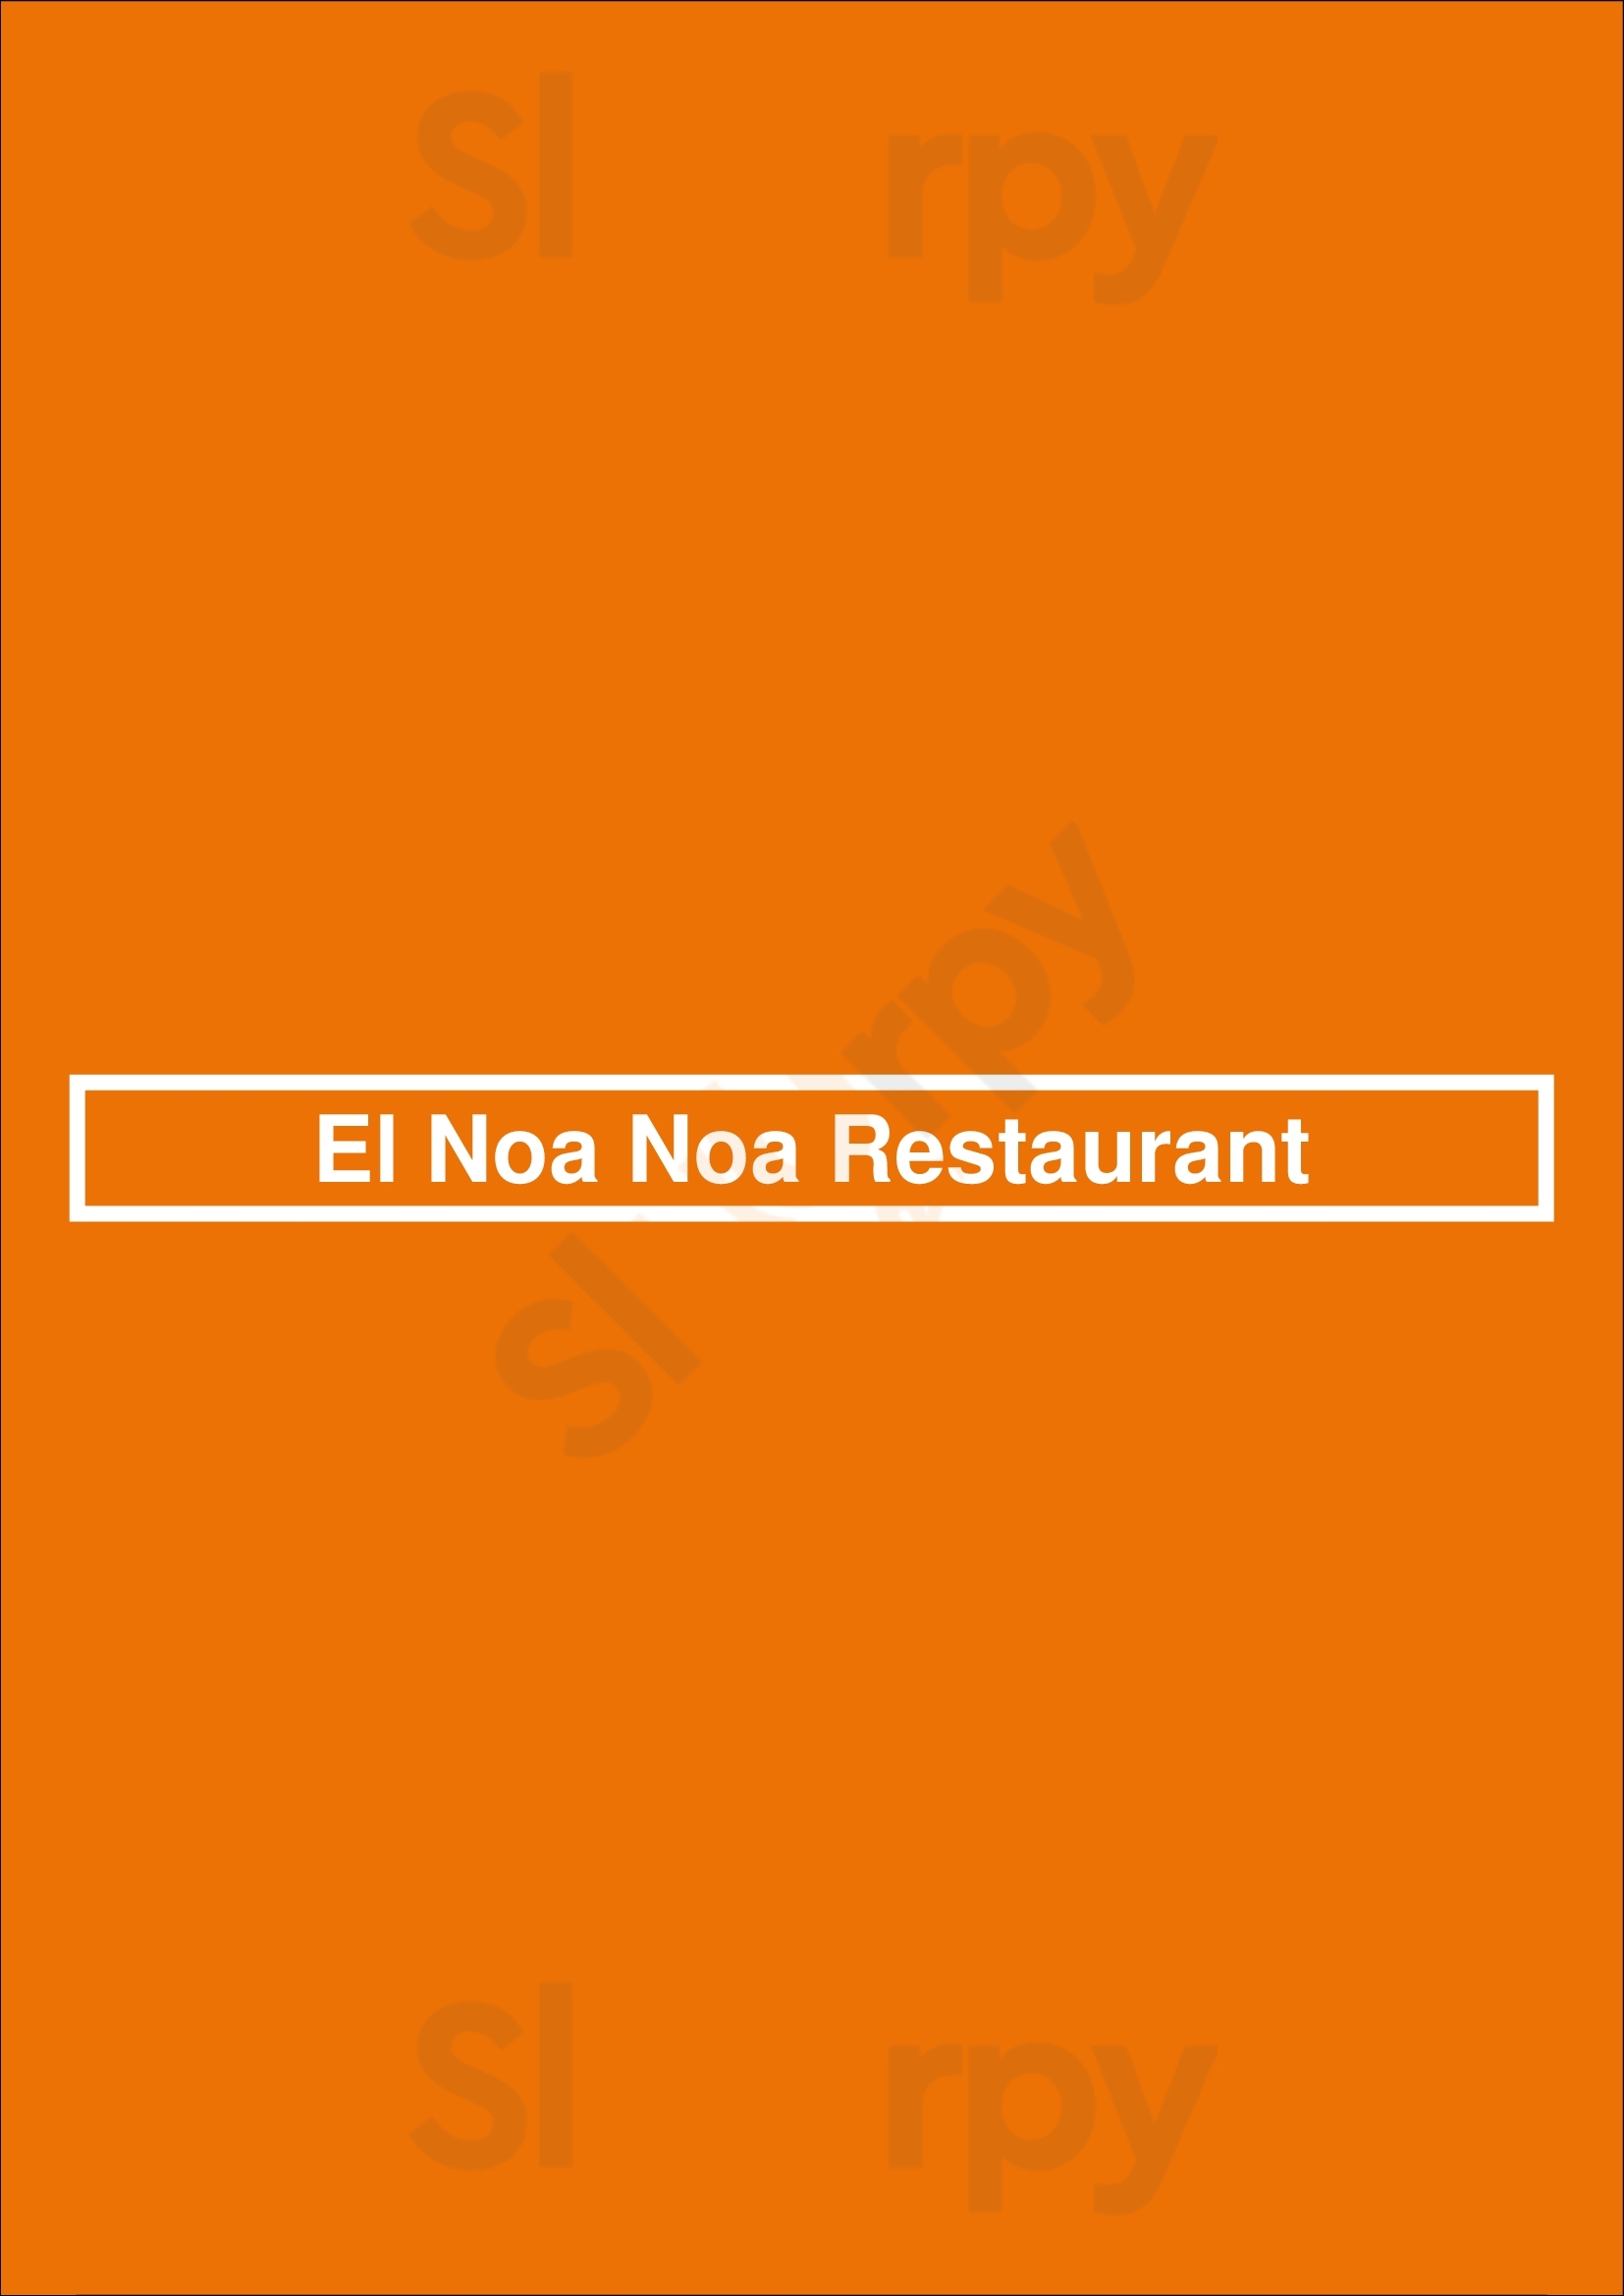 El Noa Noa Mexican Restaurant Denver Menu - 1